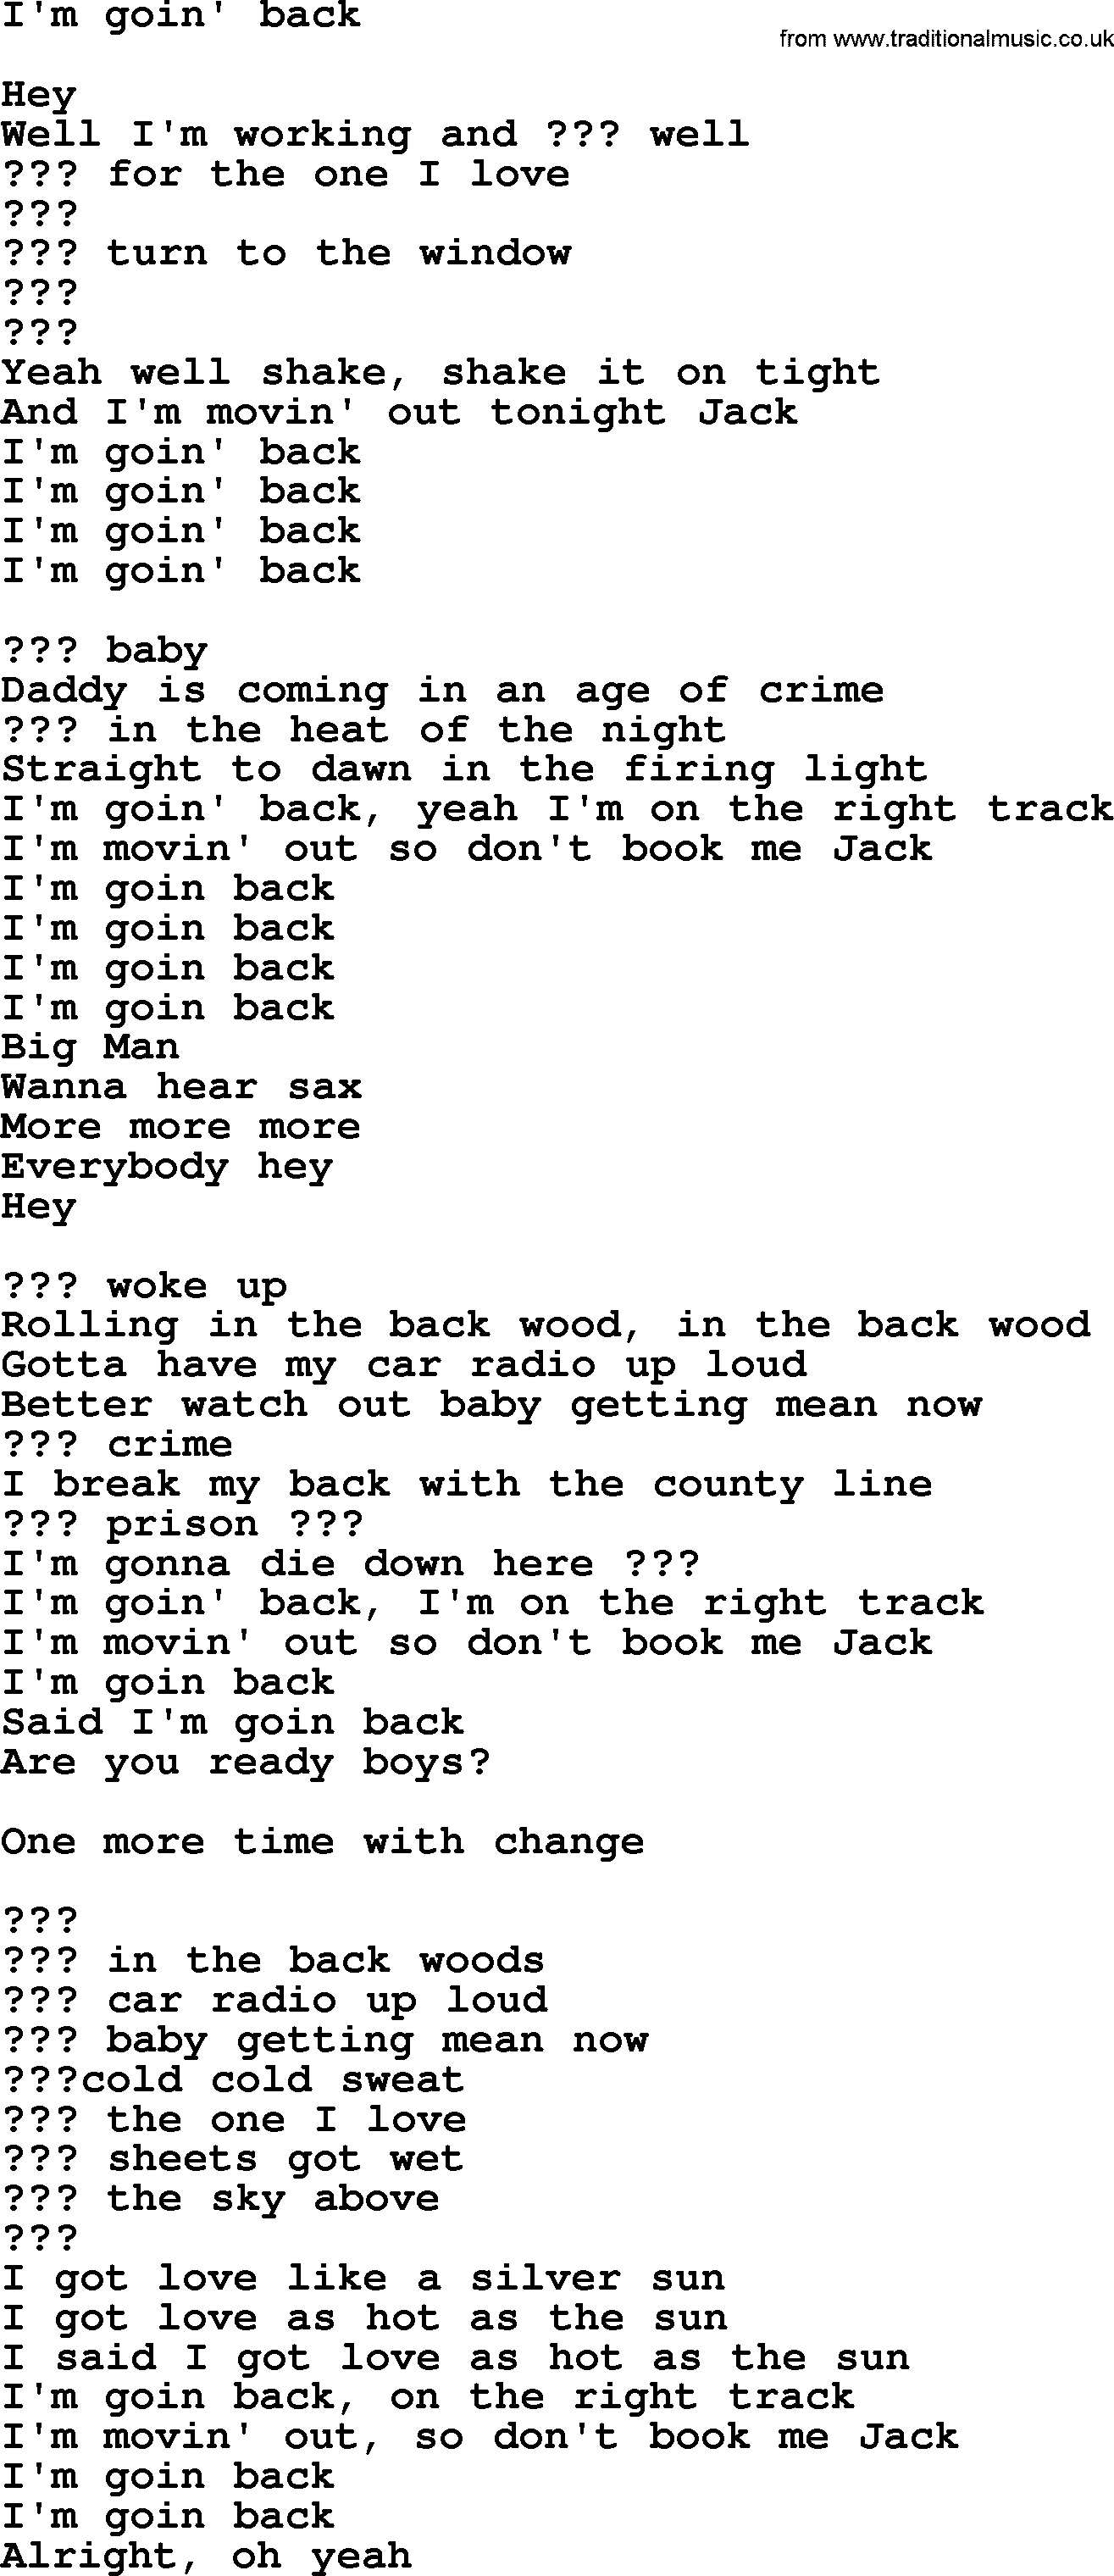 Bruce Springsteen song: I'm Goin' Back lyrics